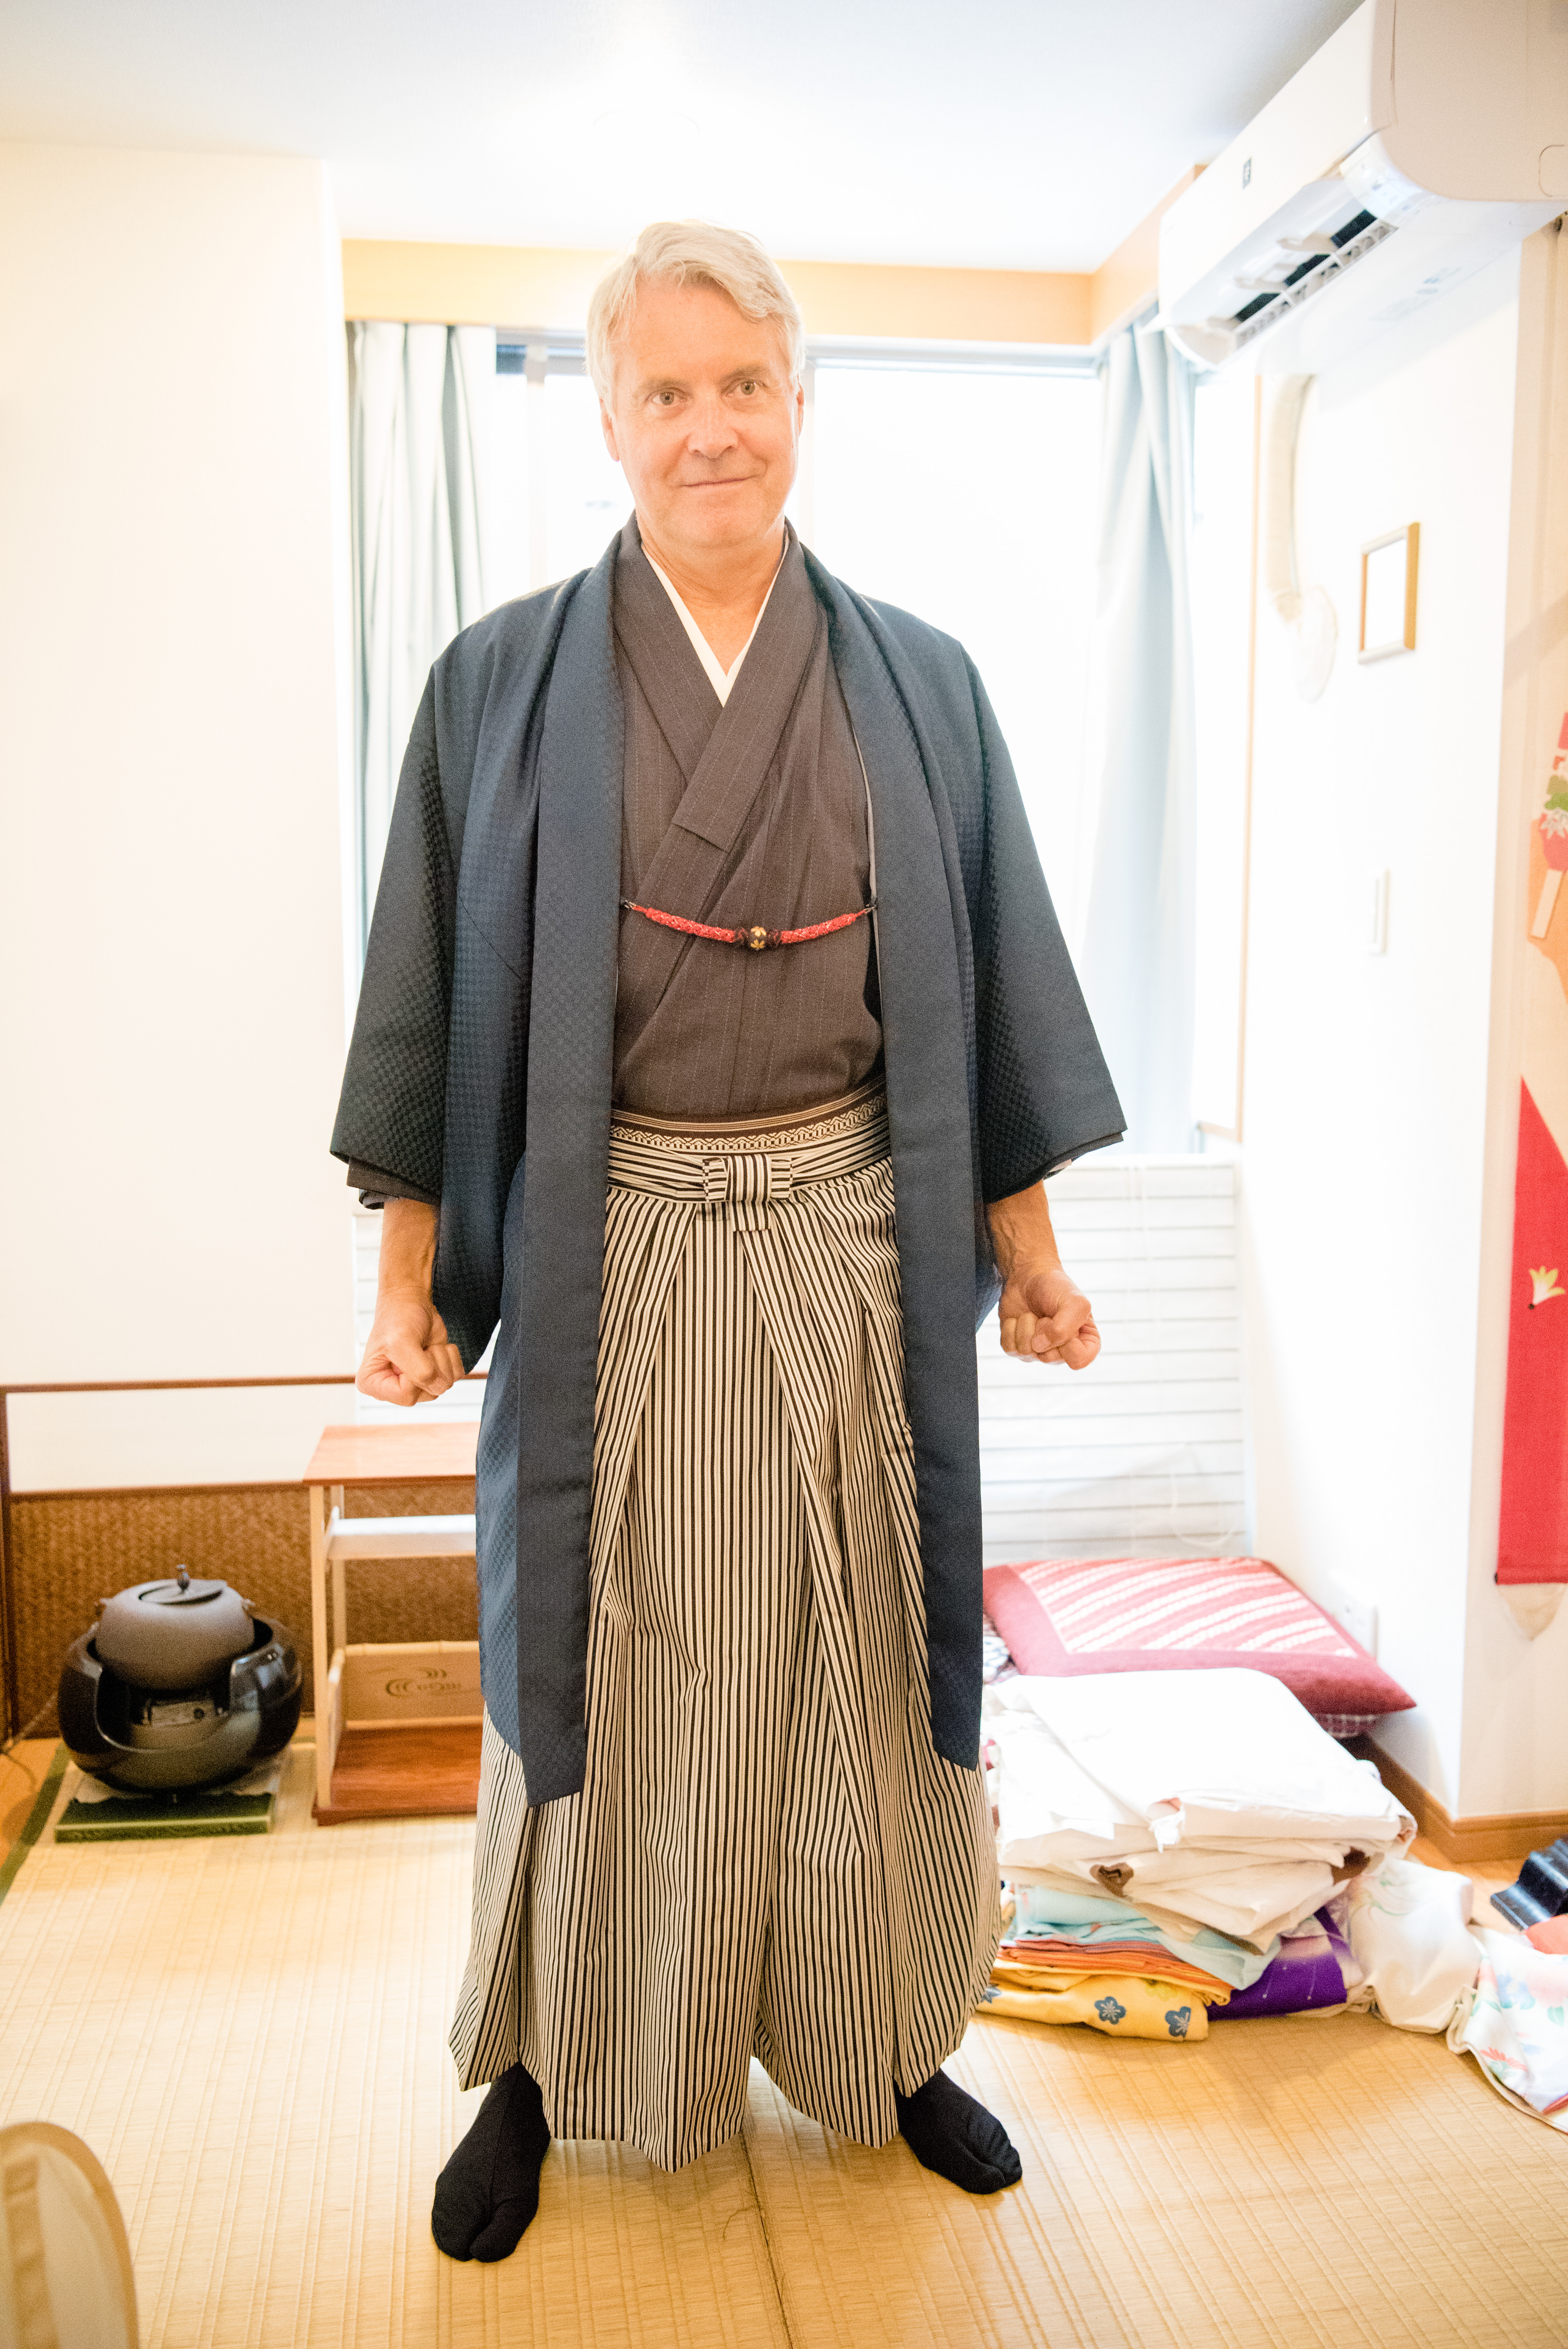 Men's Kimono, Male Kimono